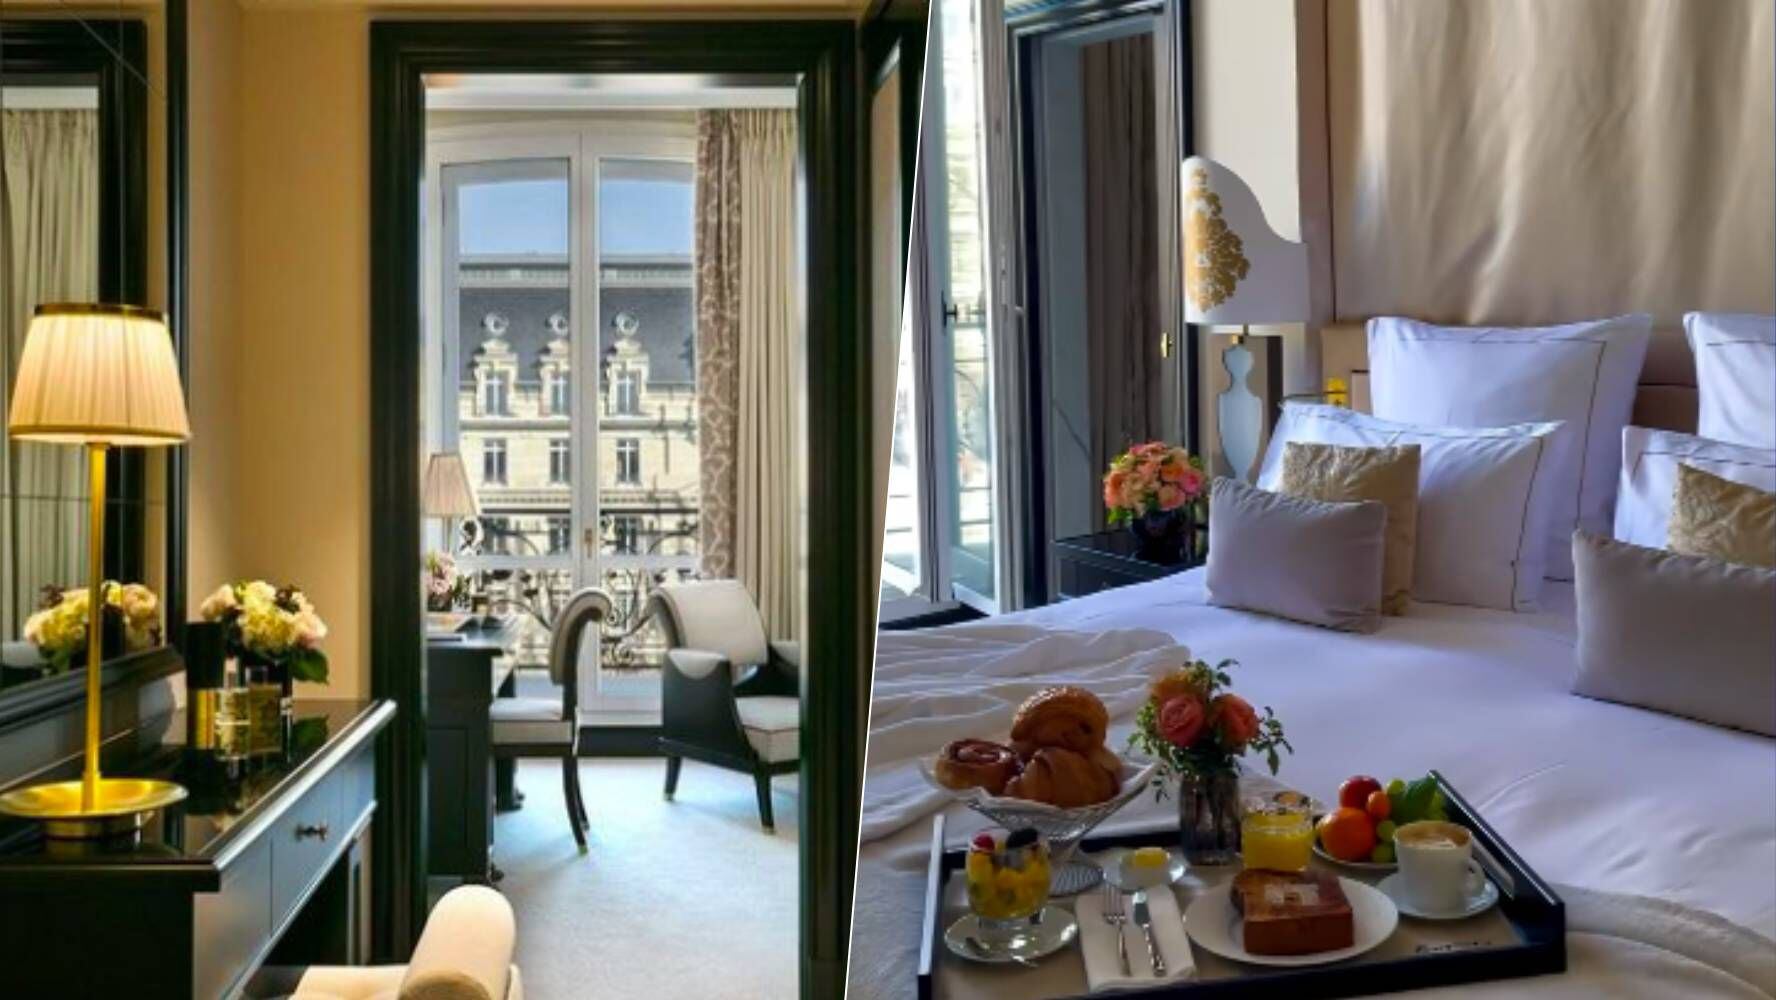 El 'Fouquet's' es uno de los hoteles más exclusivos y reconocidos de París, el precio de las habitaciones superan los mil 200 euros por noche. (Foto: Instagram / @fouquets.paris).